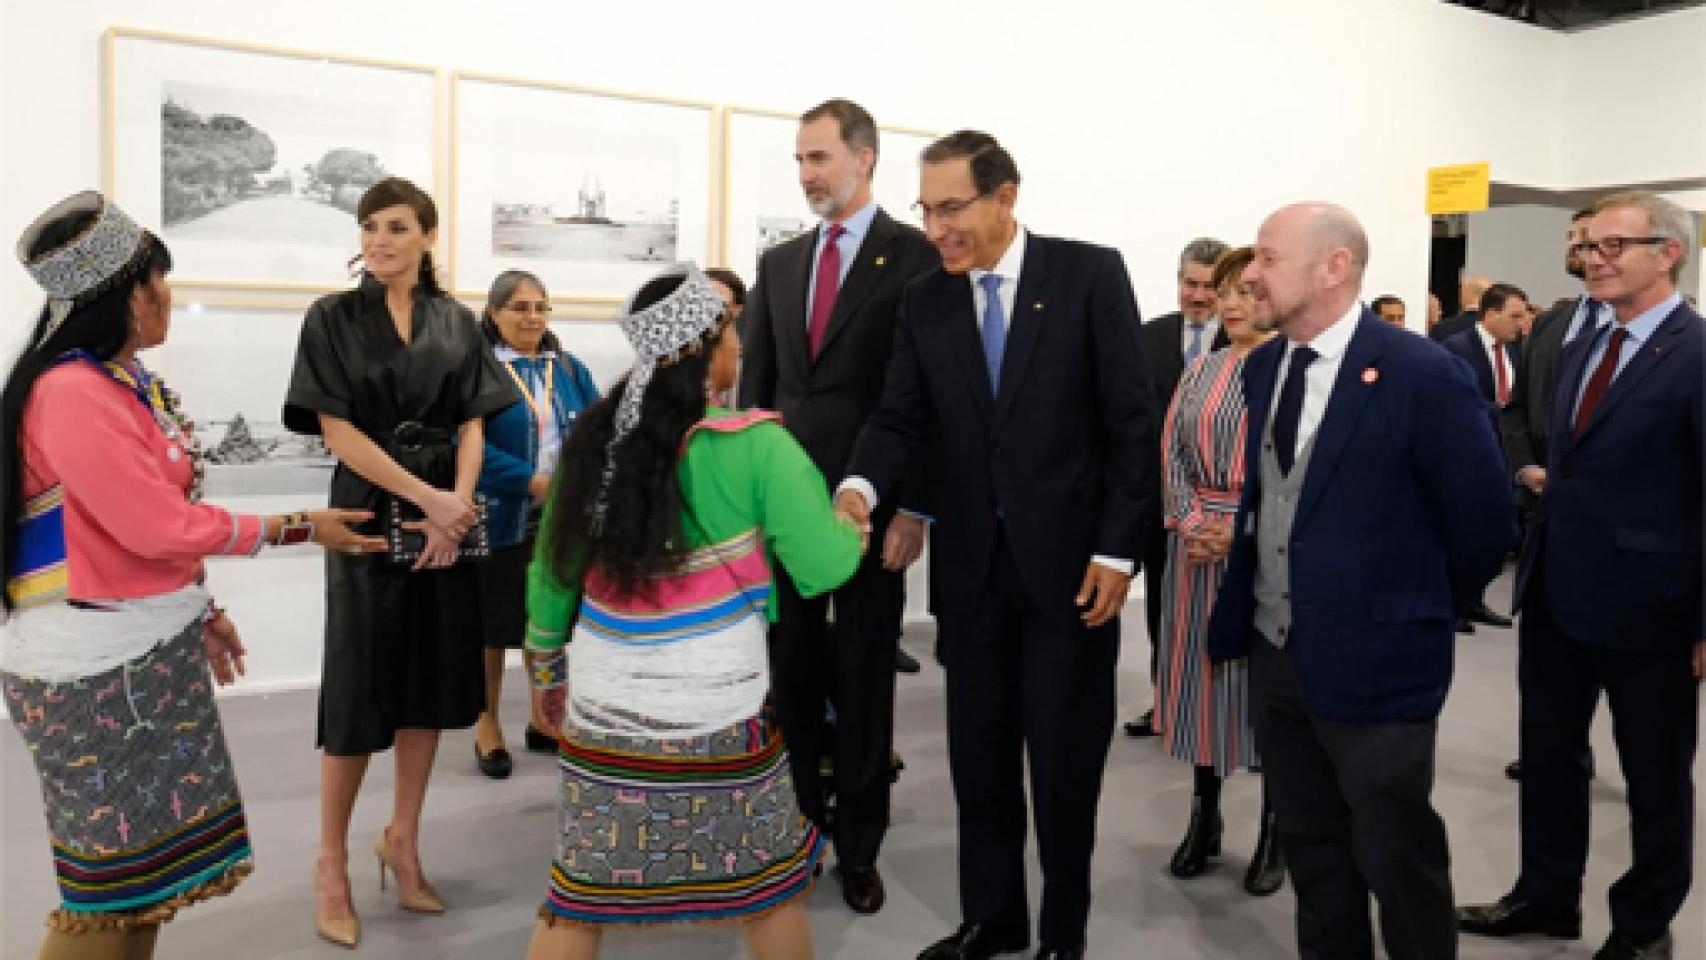 Image: La inauguración (oficial) de ARCO se centra en Perú